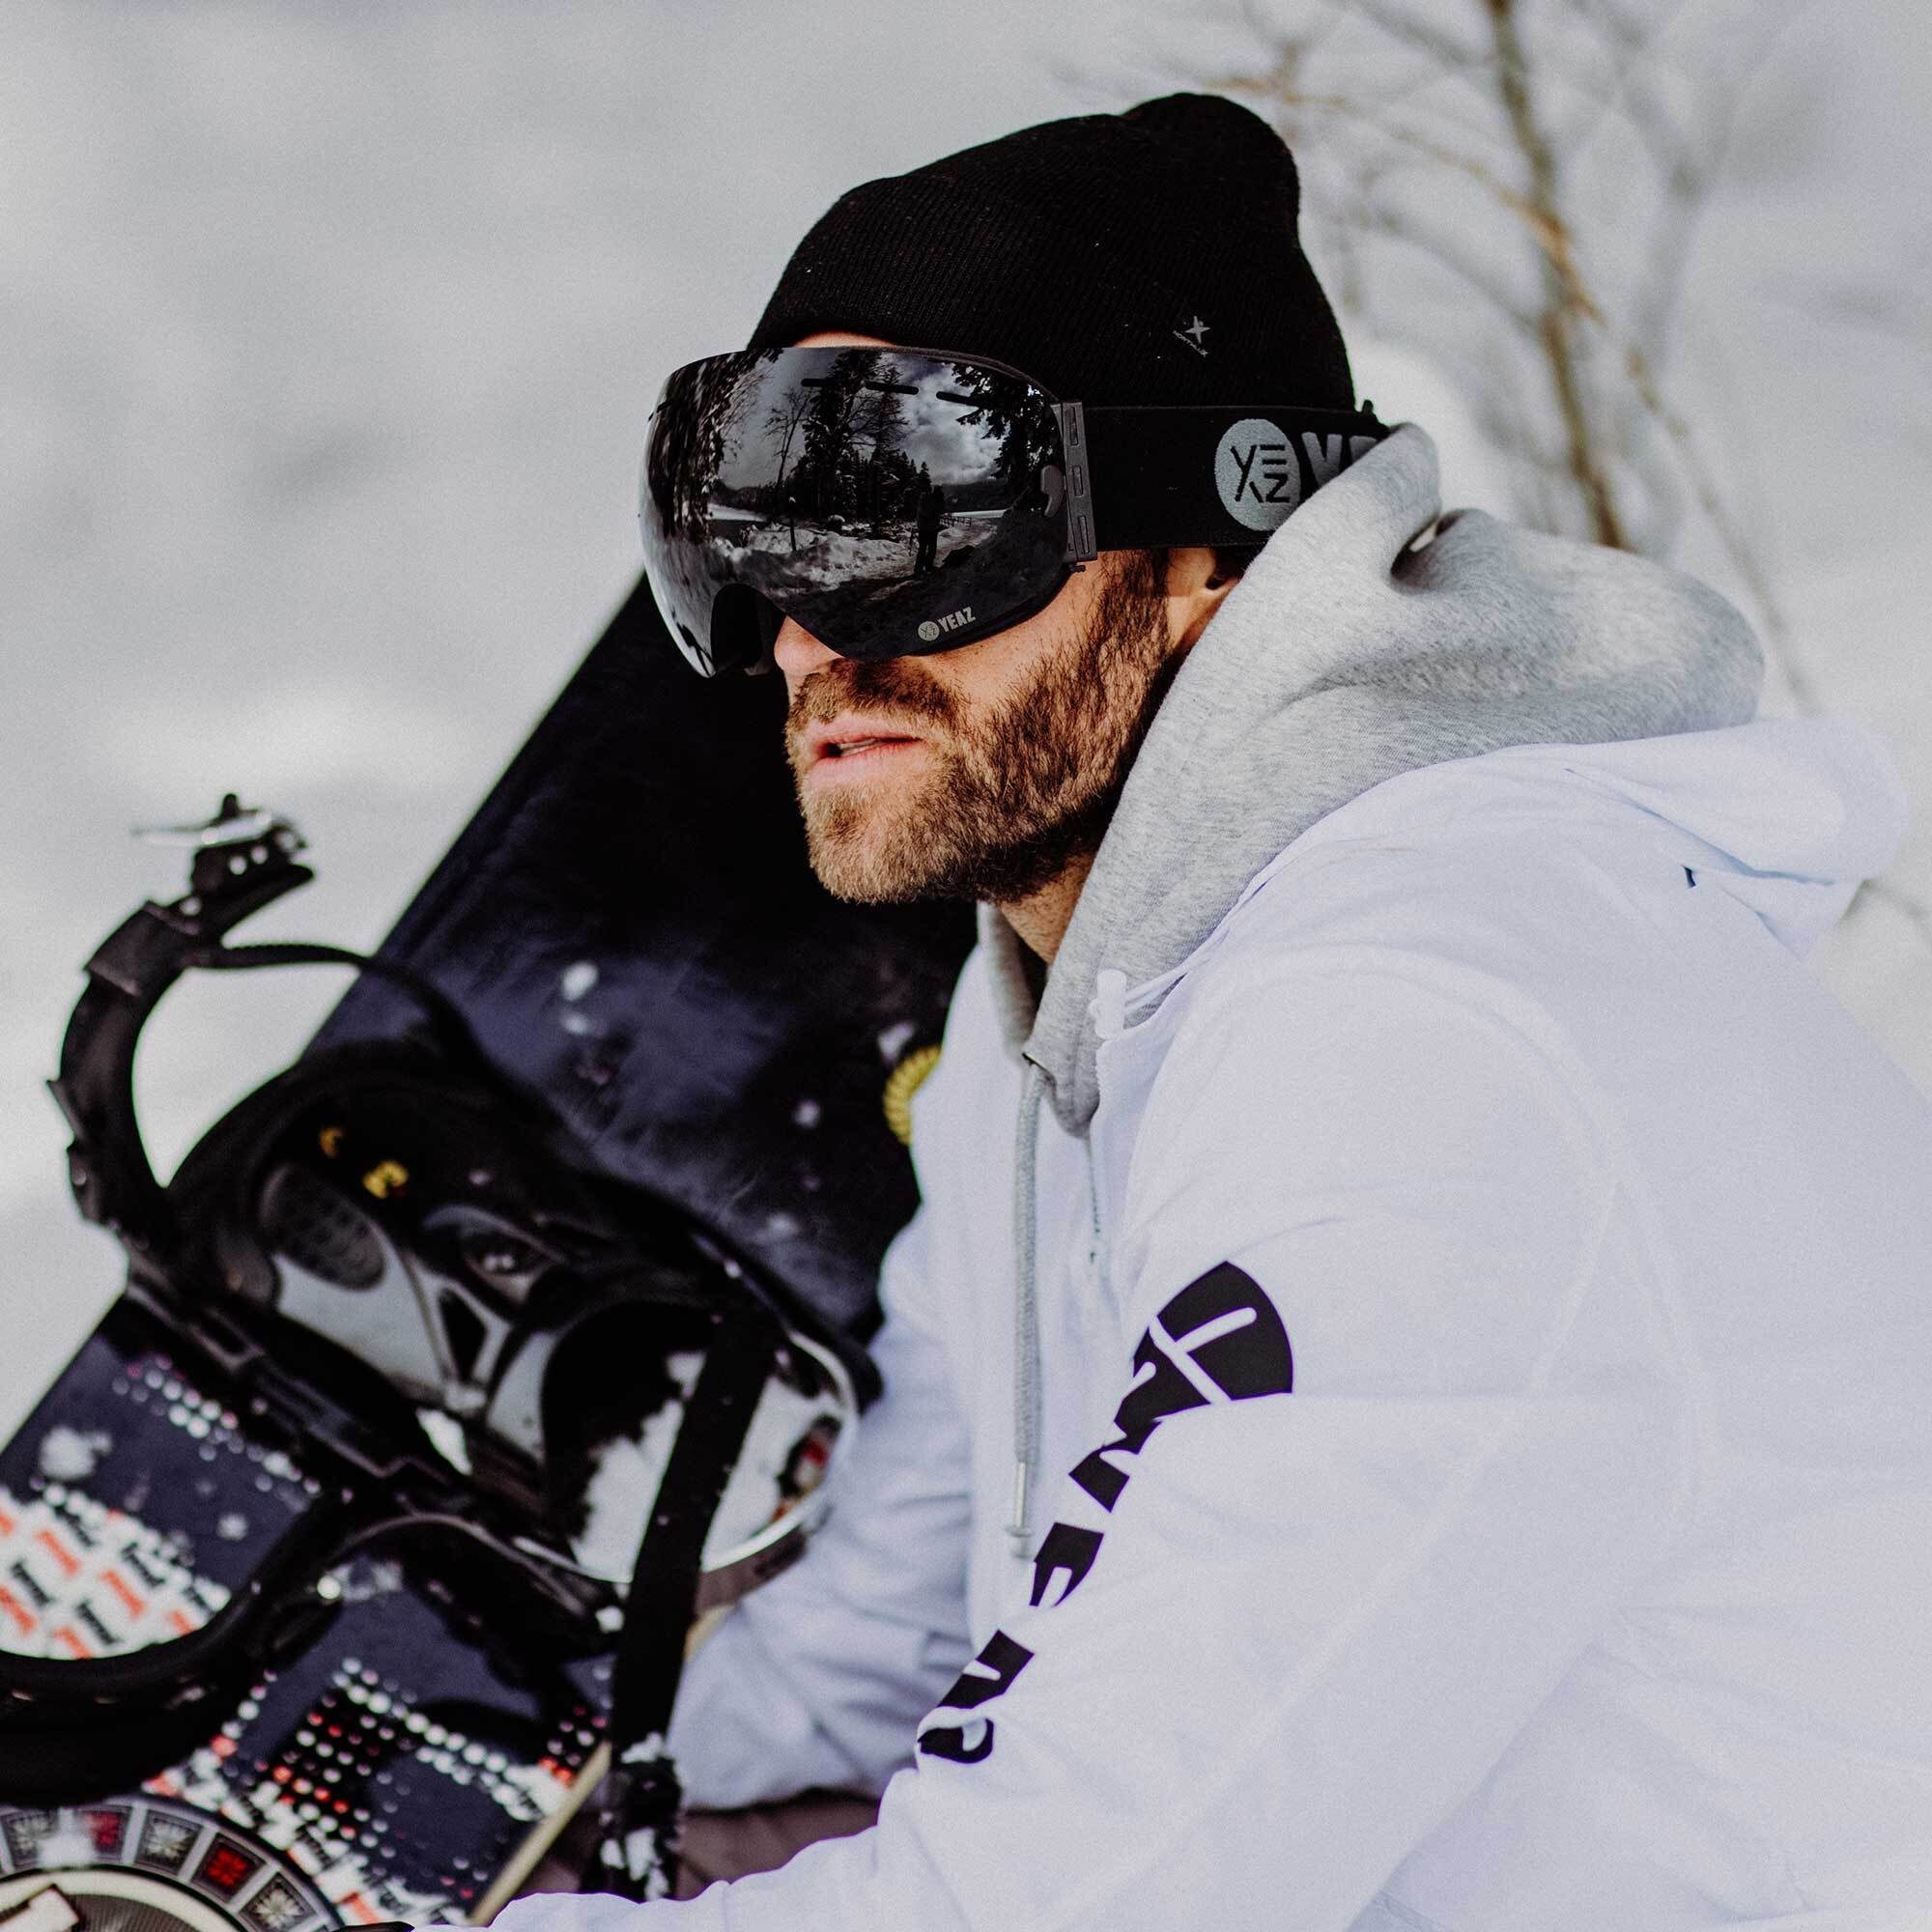 YEAZ Skibrille XTRM-SUMMIT, Erwachsene für und Snowboardbrille Jugendliche Premium-Ski- und